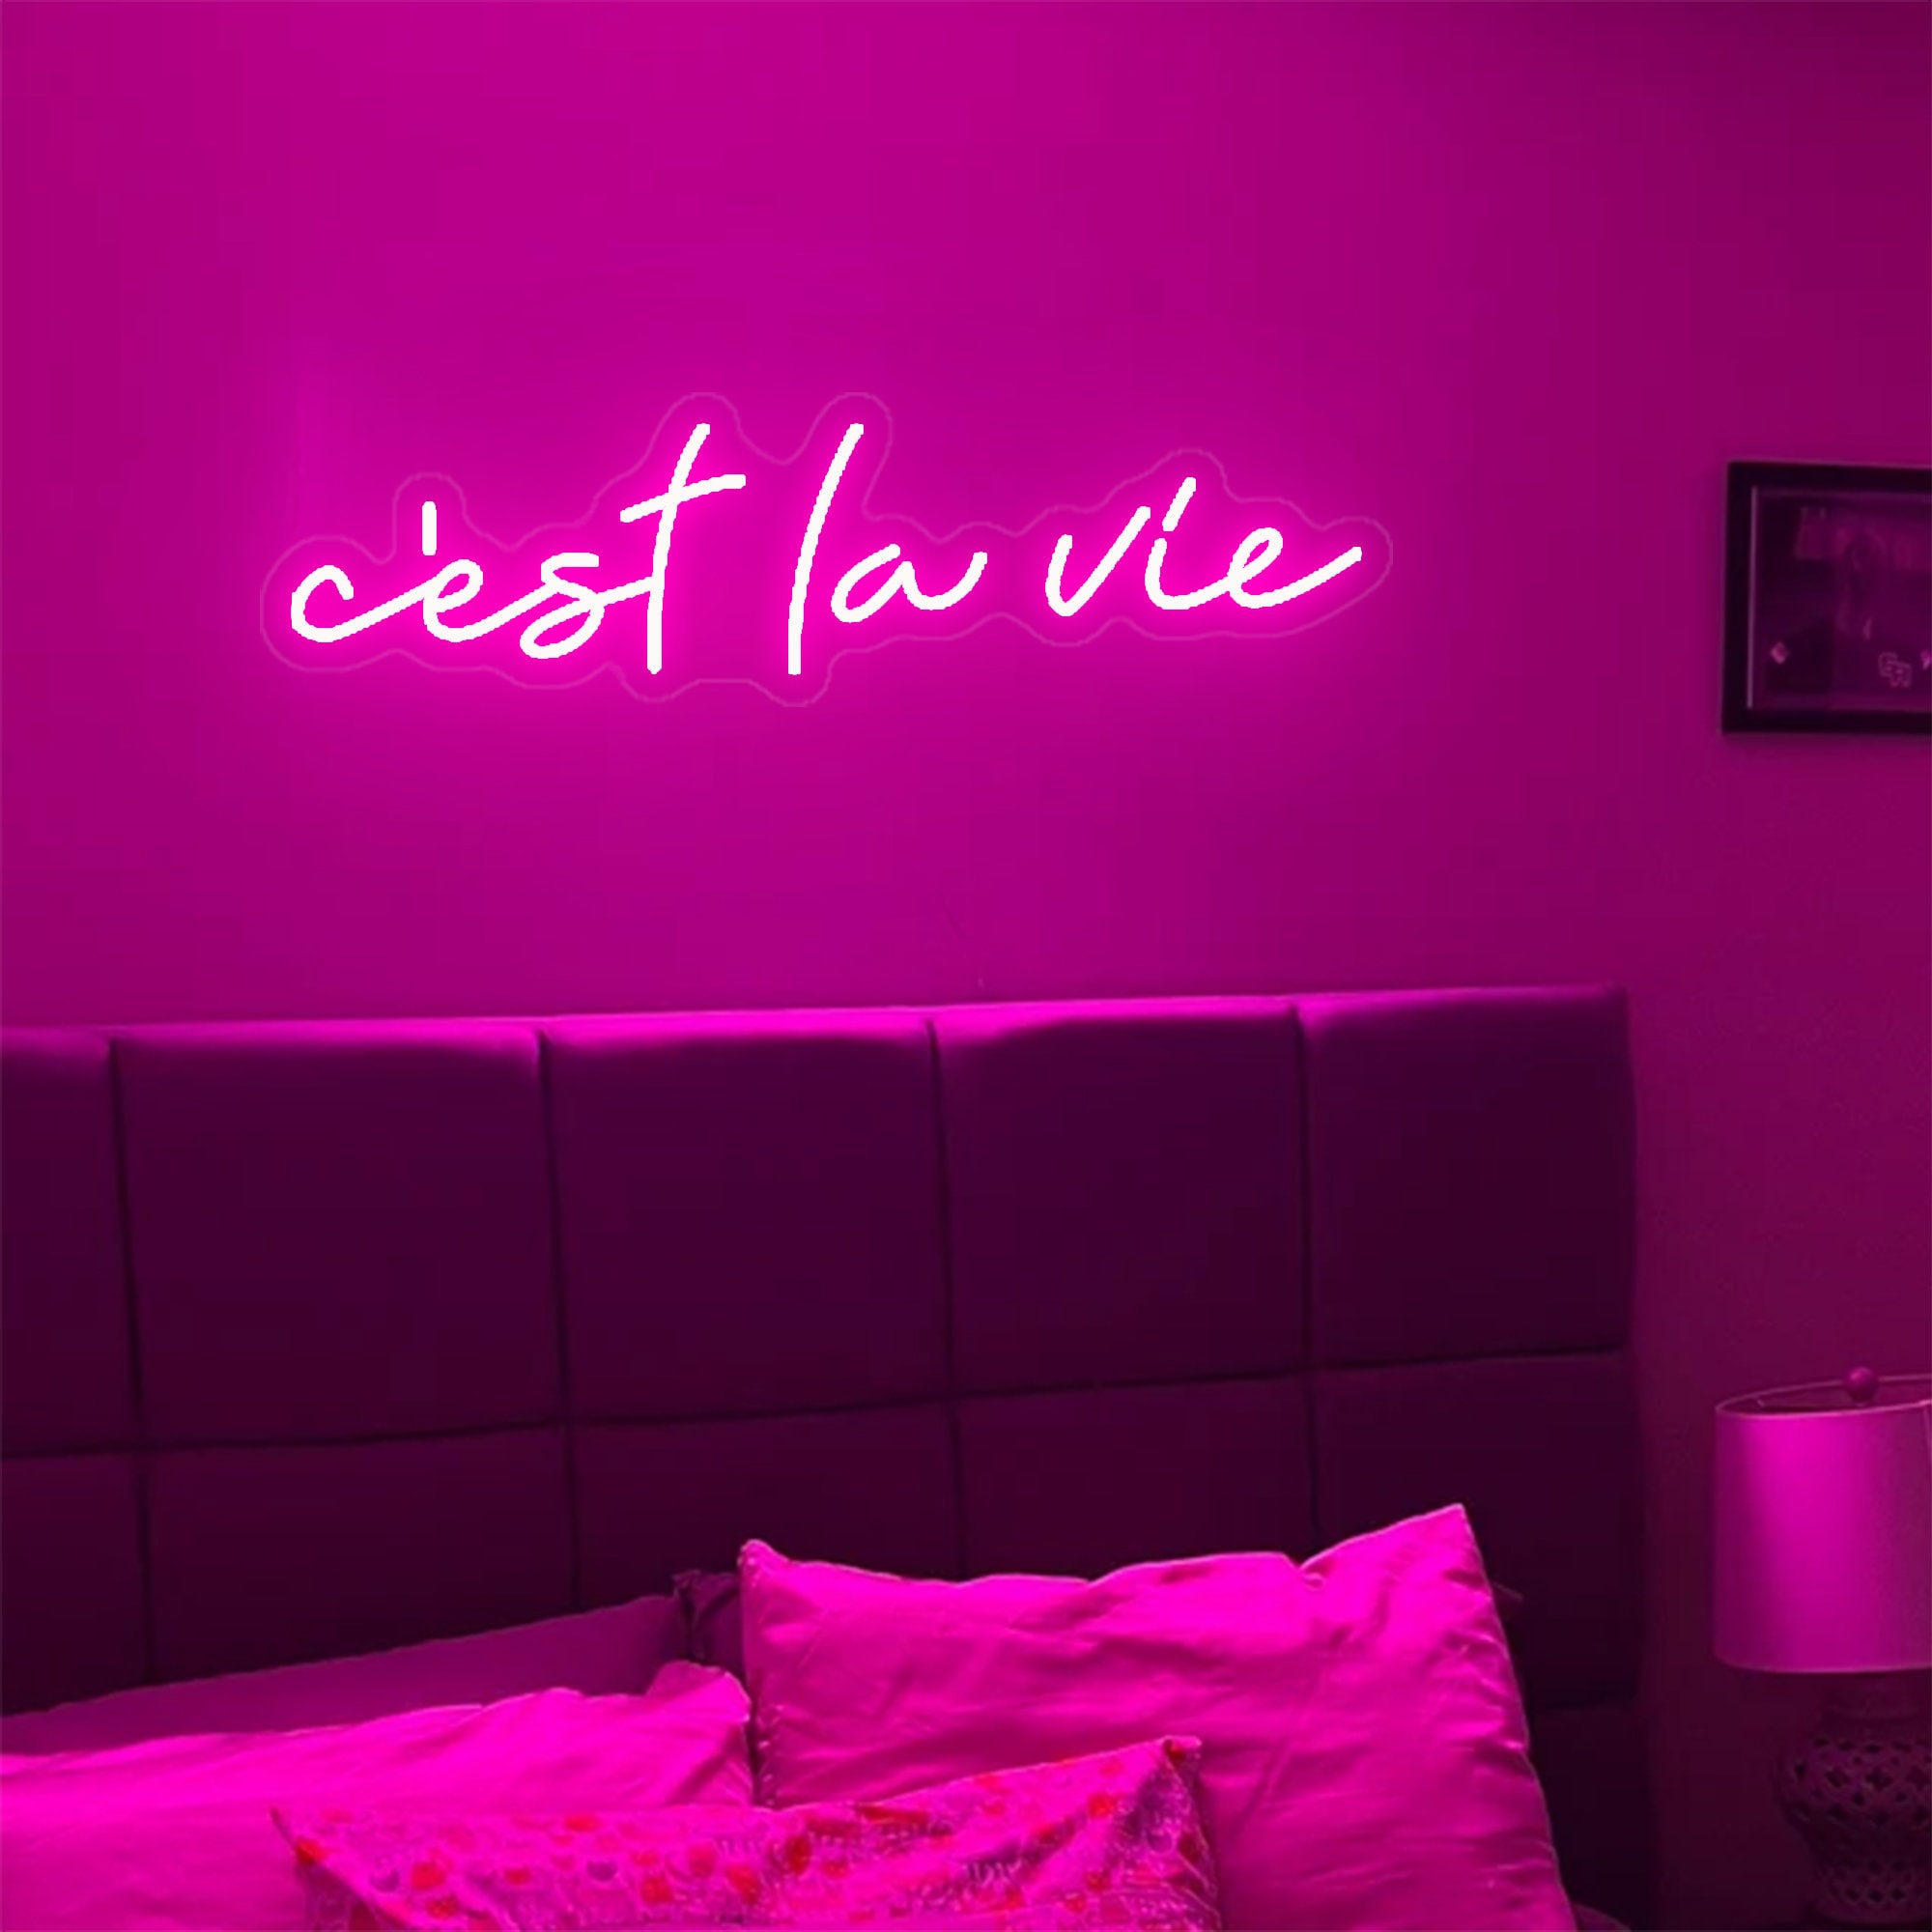  "C'est La Vie" neon sign